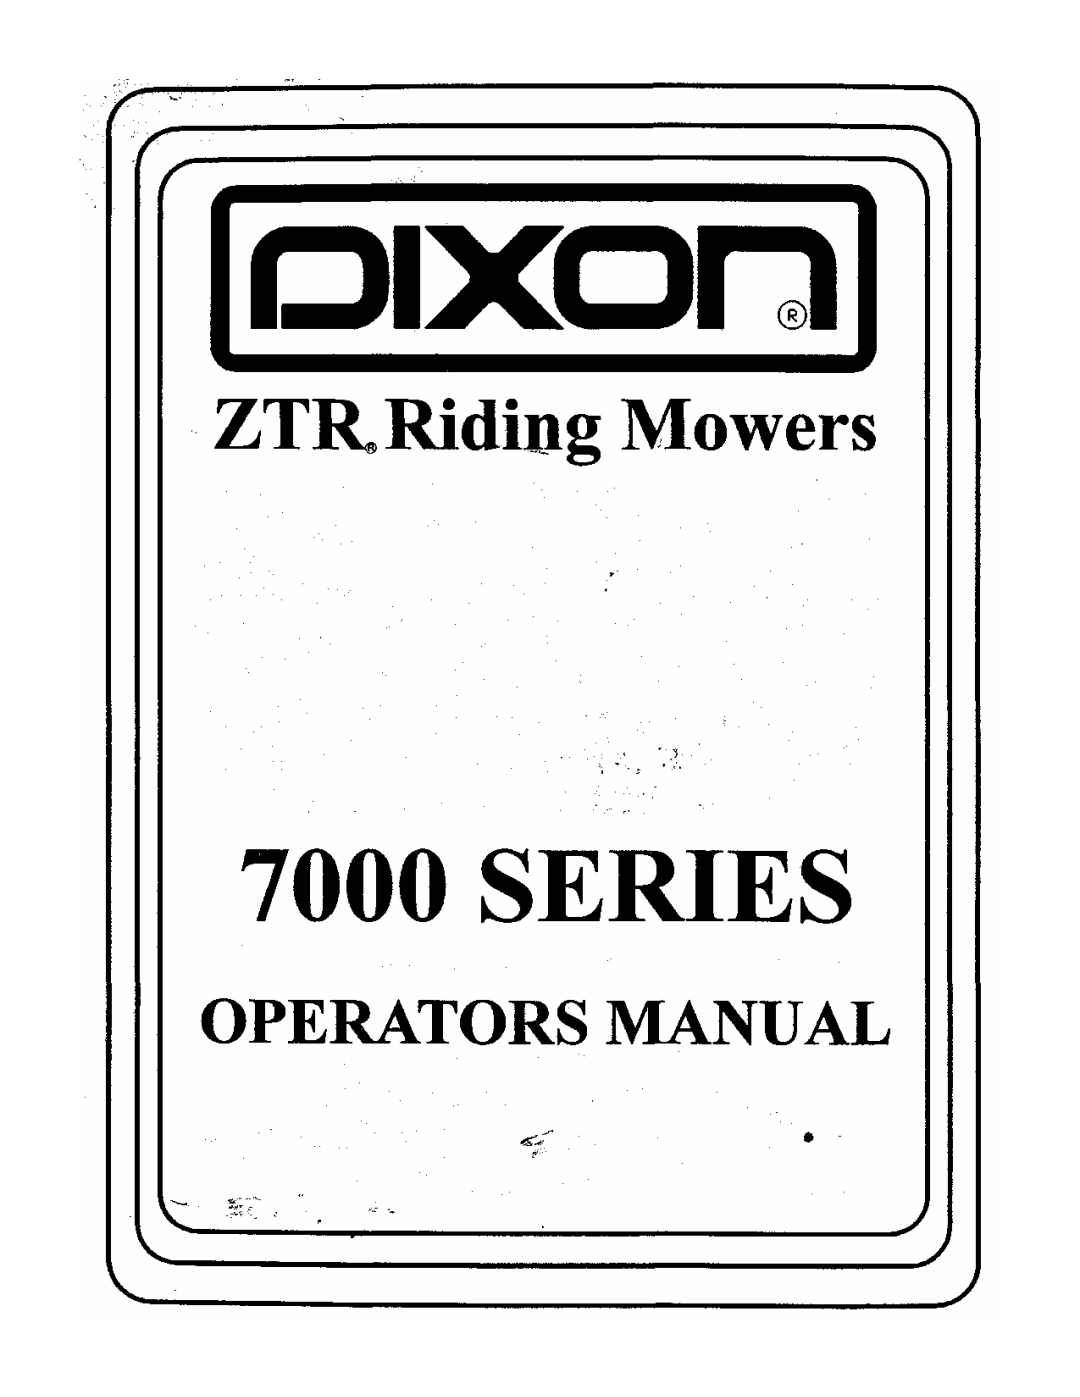 Dixon 700 Series manual 